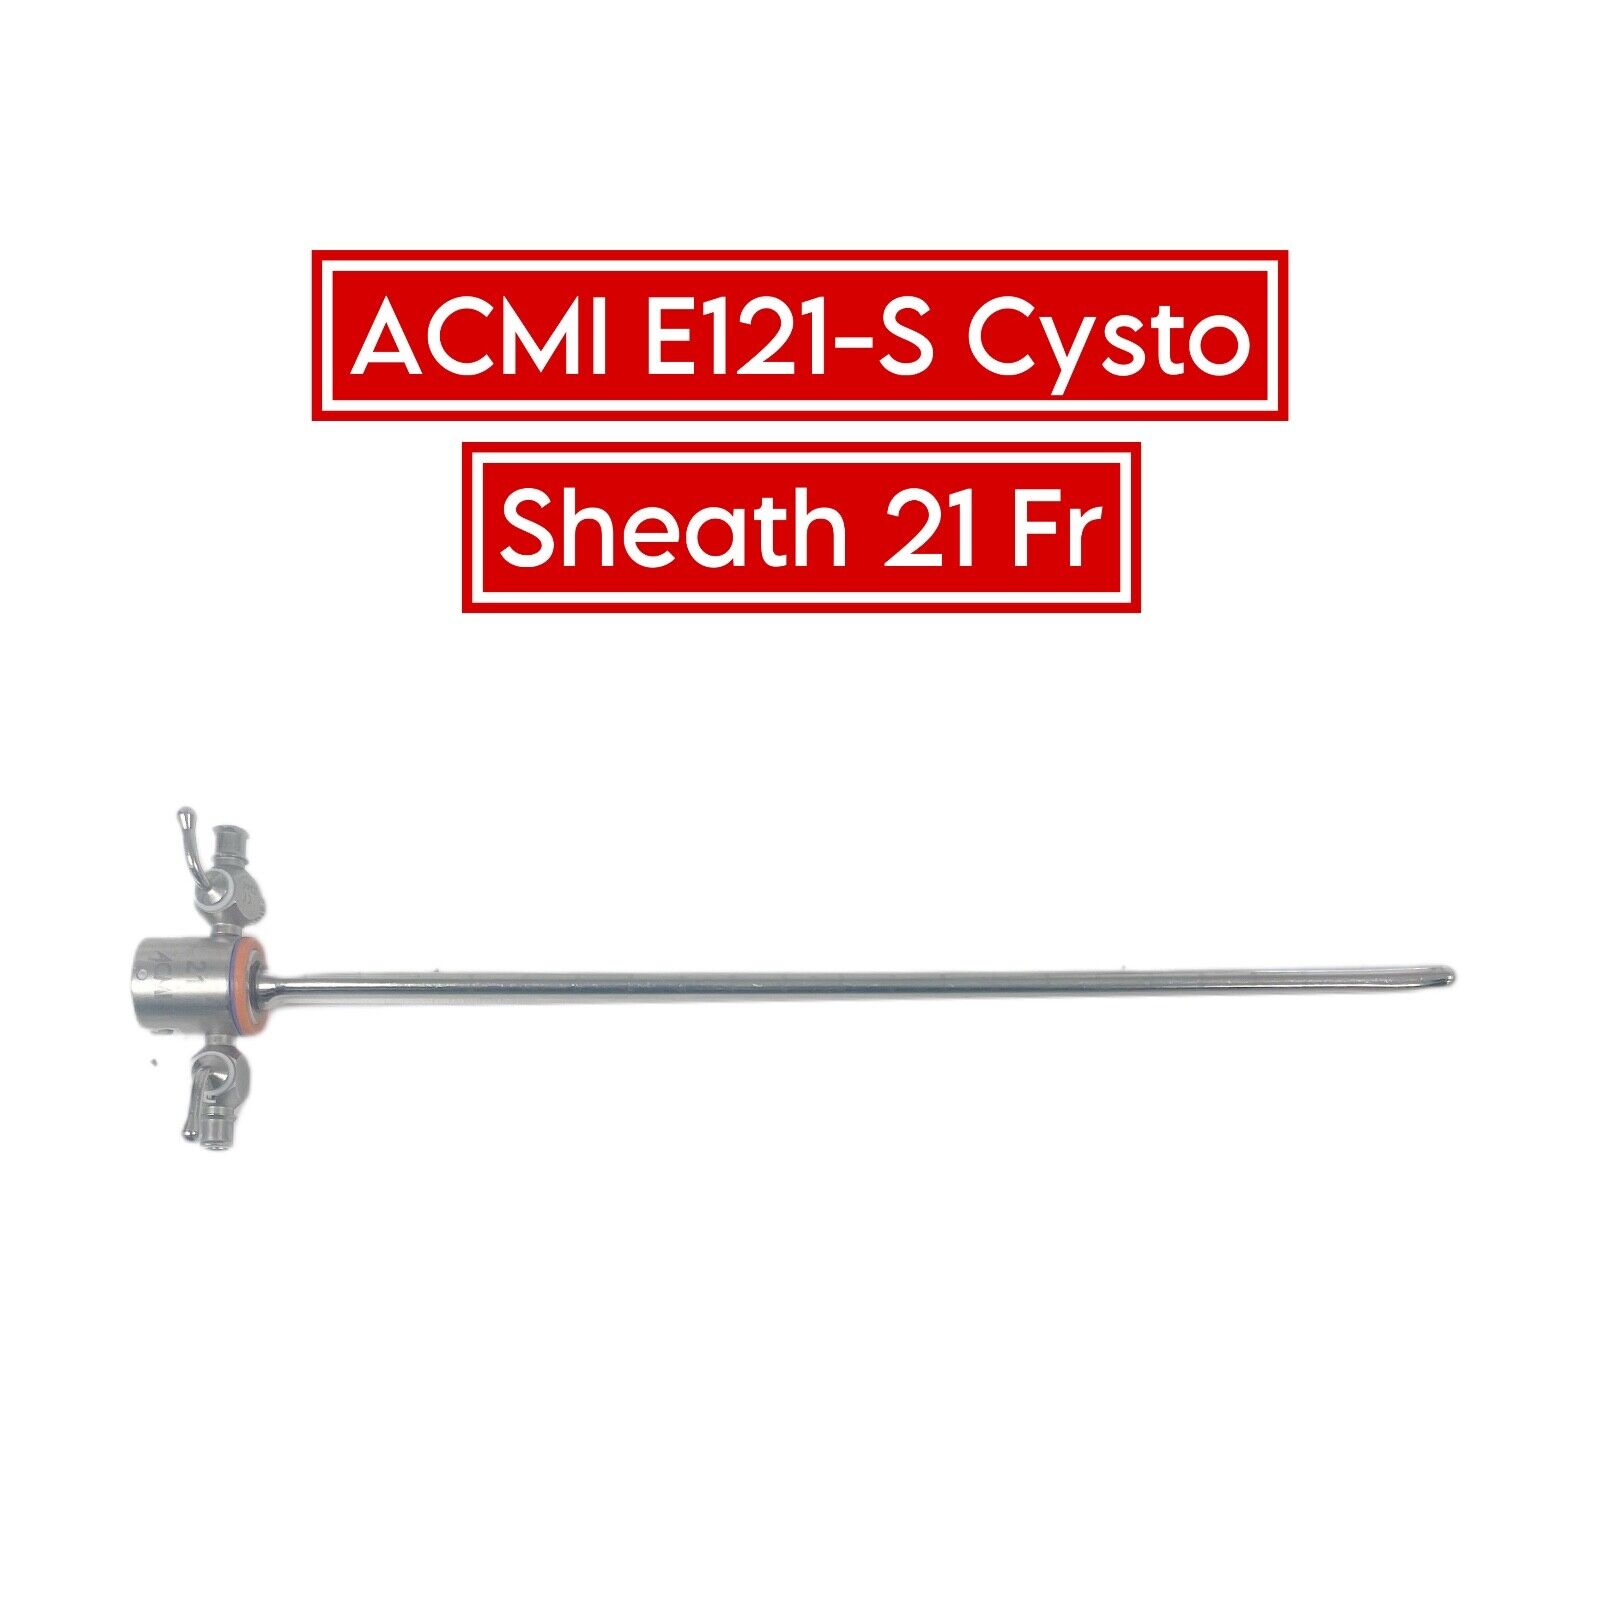 Gyrus ACMI REF E121-S Cysto Sheath 21 Fr